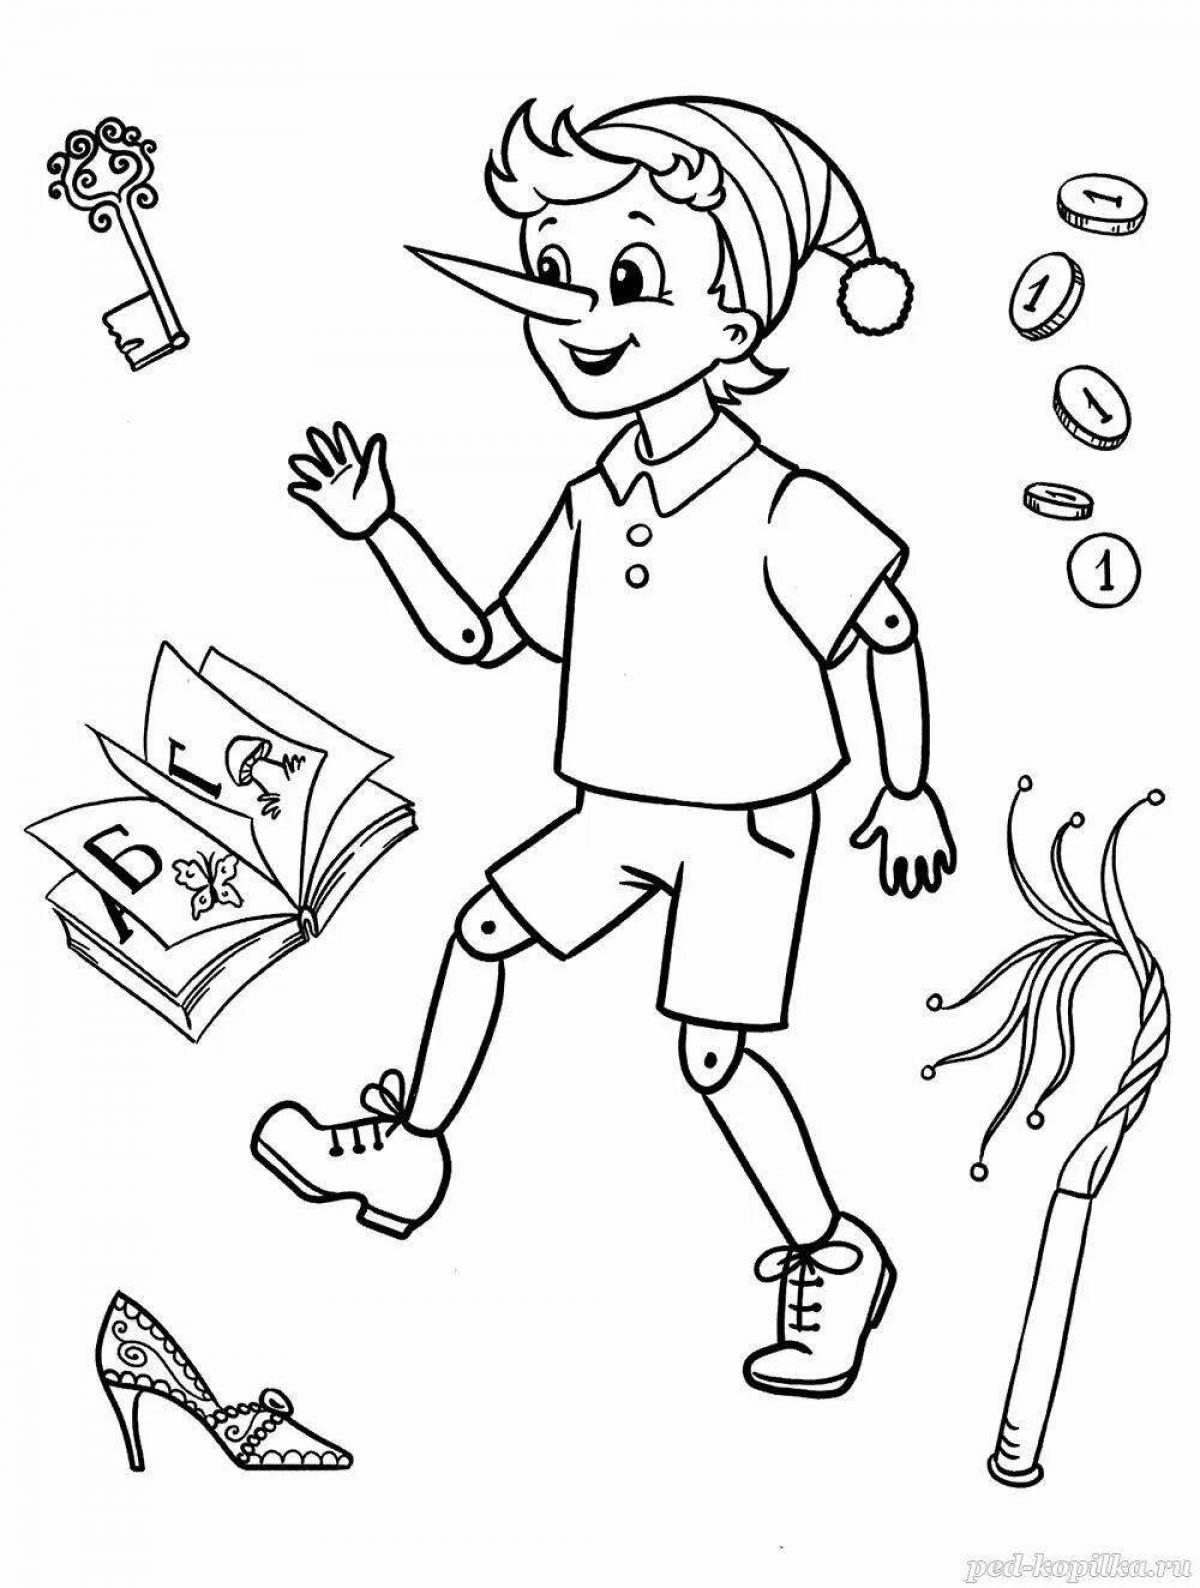 Восхитительная раскраска пиноккио для детей 6-7 лет